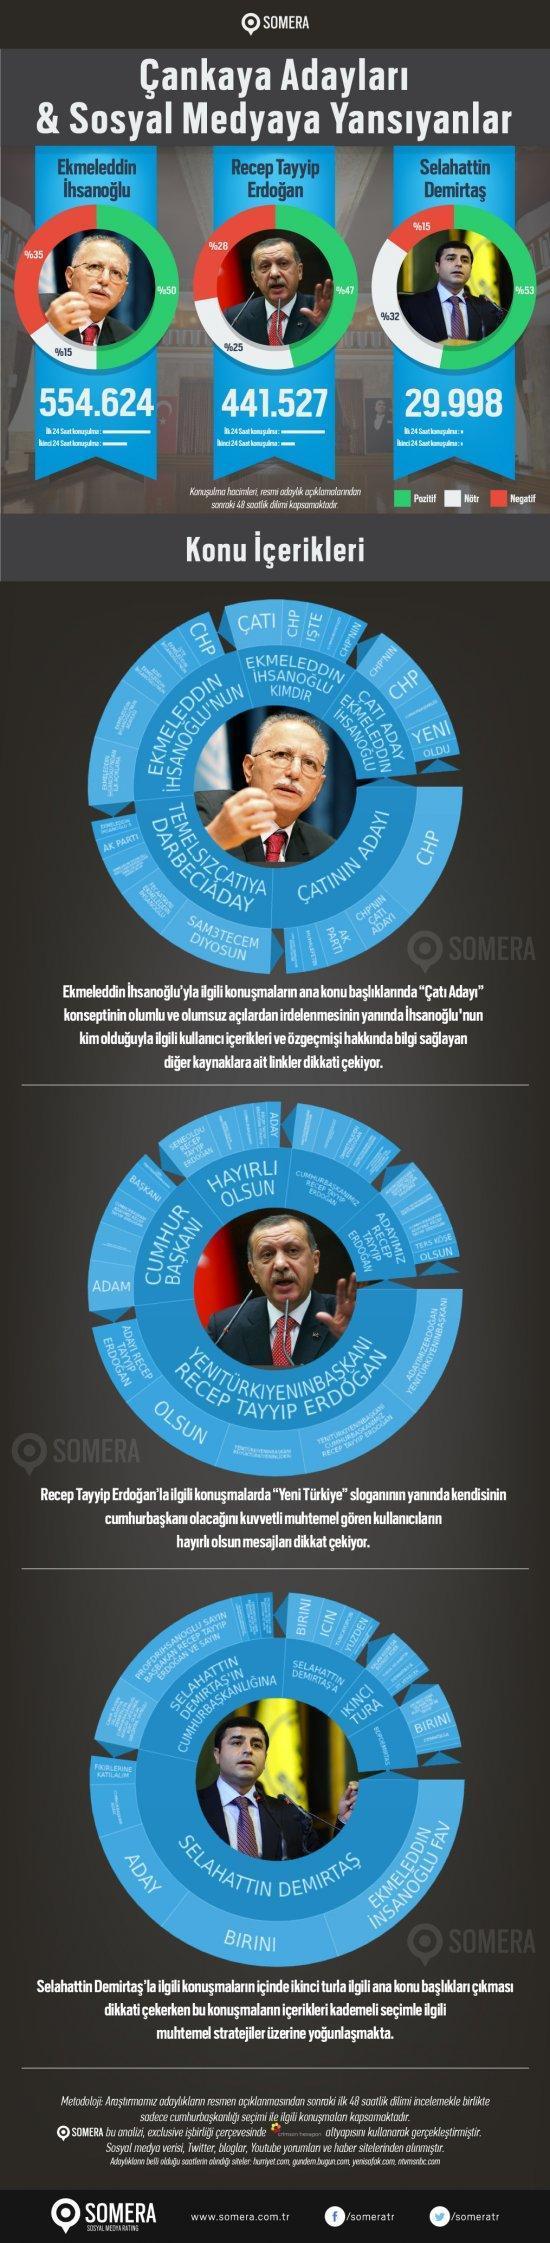 İhsanoğlu sosyal medyada Erdoğanı geçti